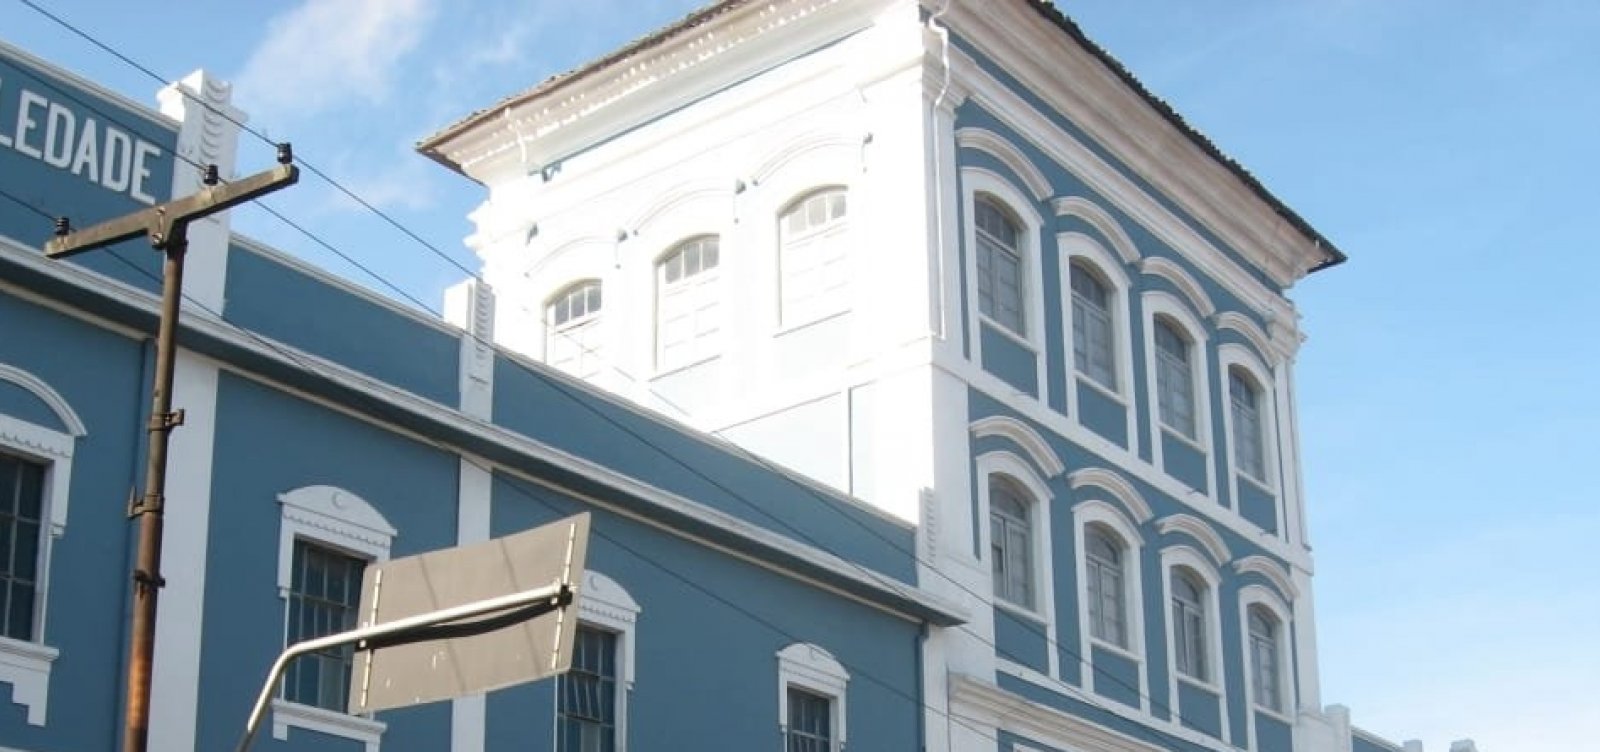 Instituição centenária, Colégio Soledade inicia campanha virtual para reforma do telhado